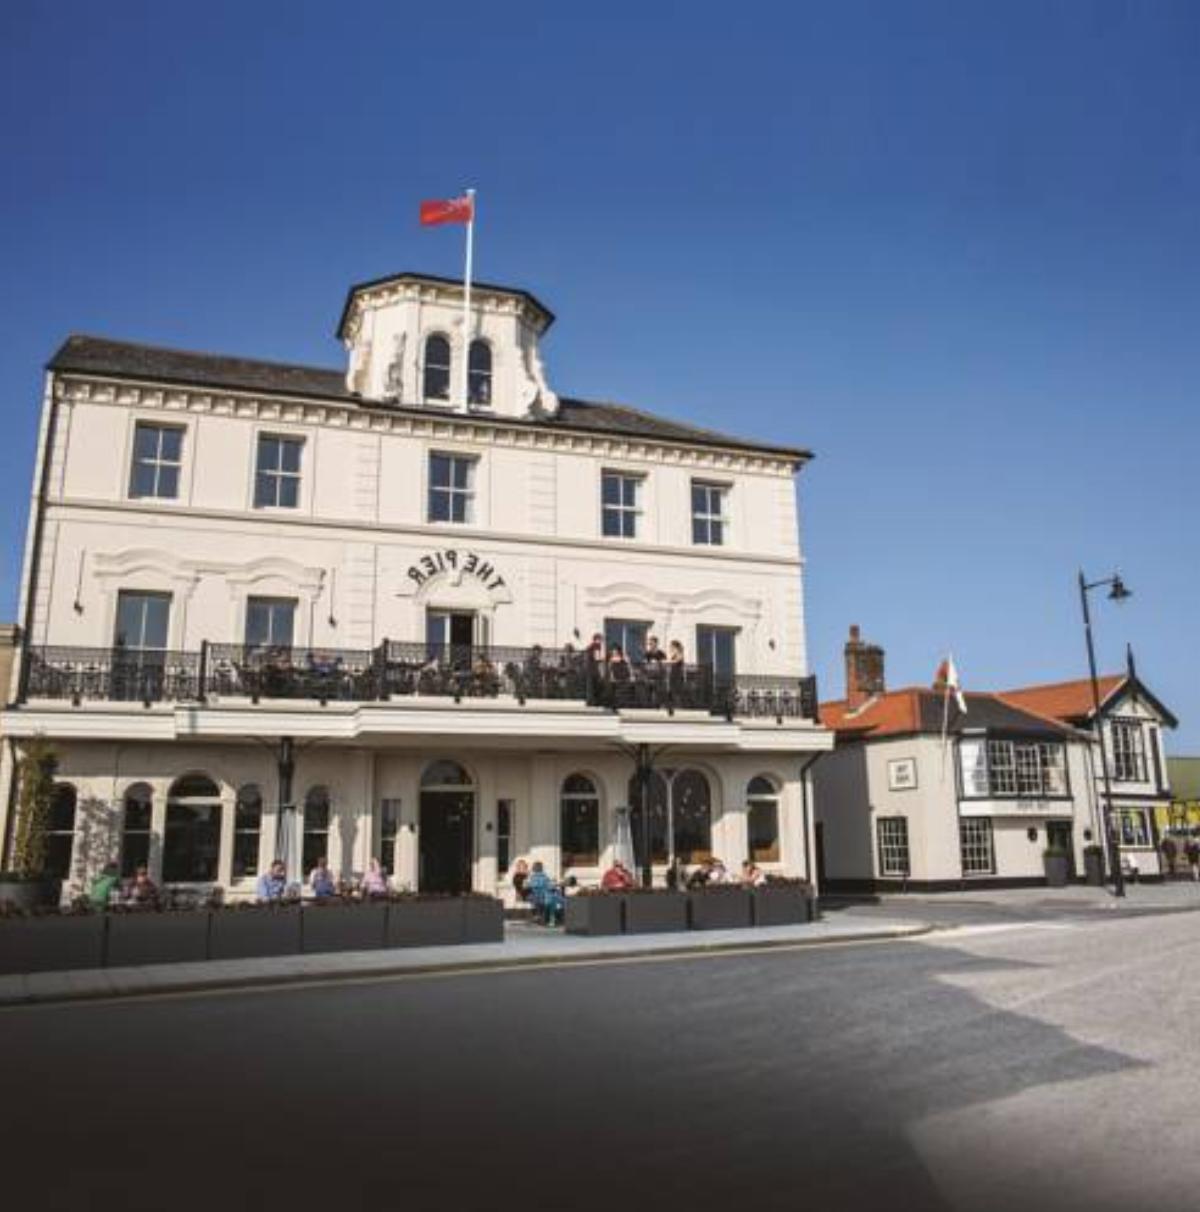 The Pier Hotel Hotel Harwich United Kingdom